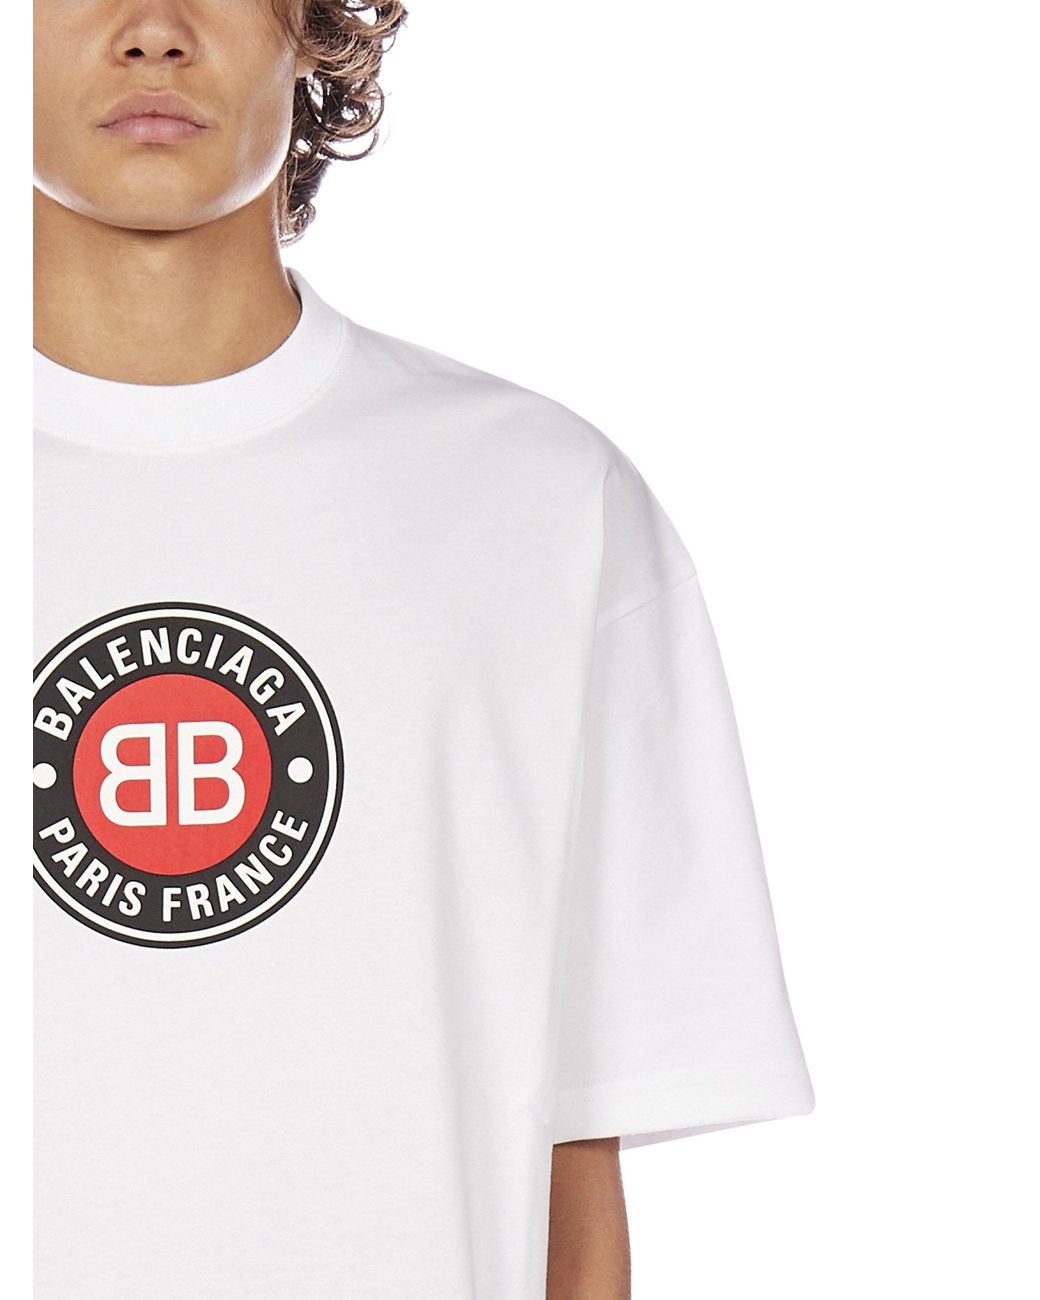 Balenciaga Paris France Print T-shirt in White for Men | Lyst Canada